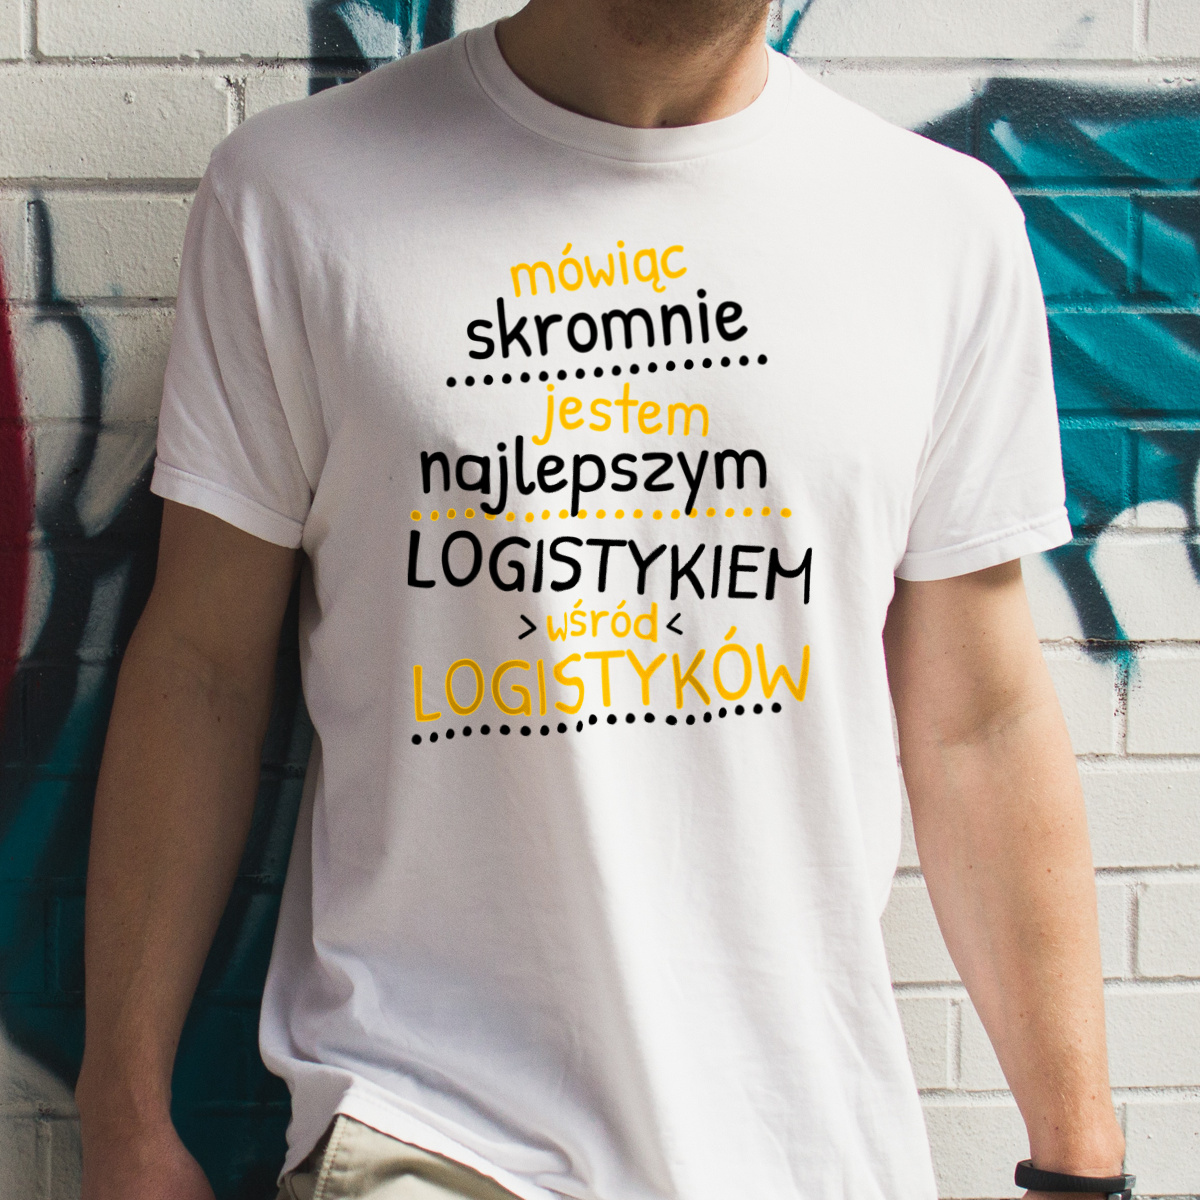 Mówiąc Skromnie - Logistyk - Męska Koszulka Biała